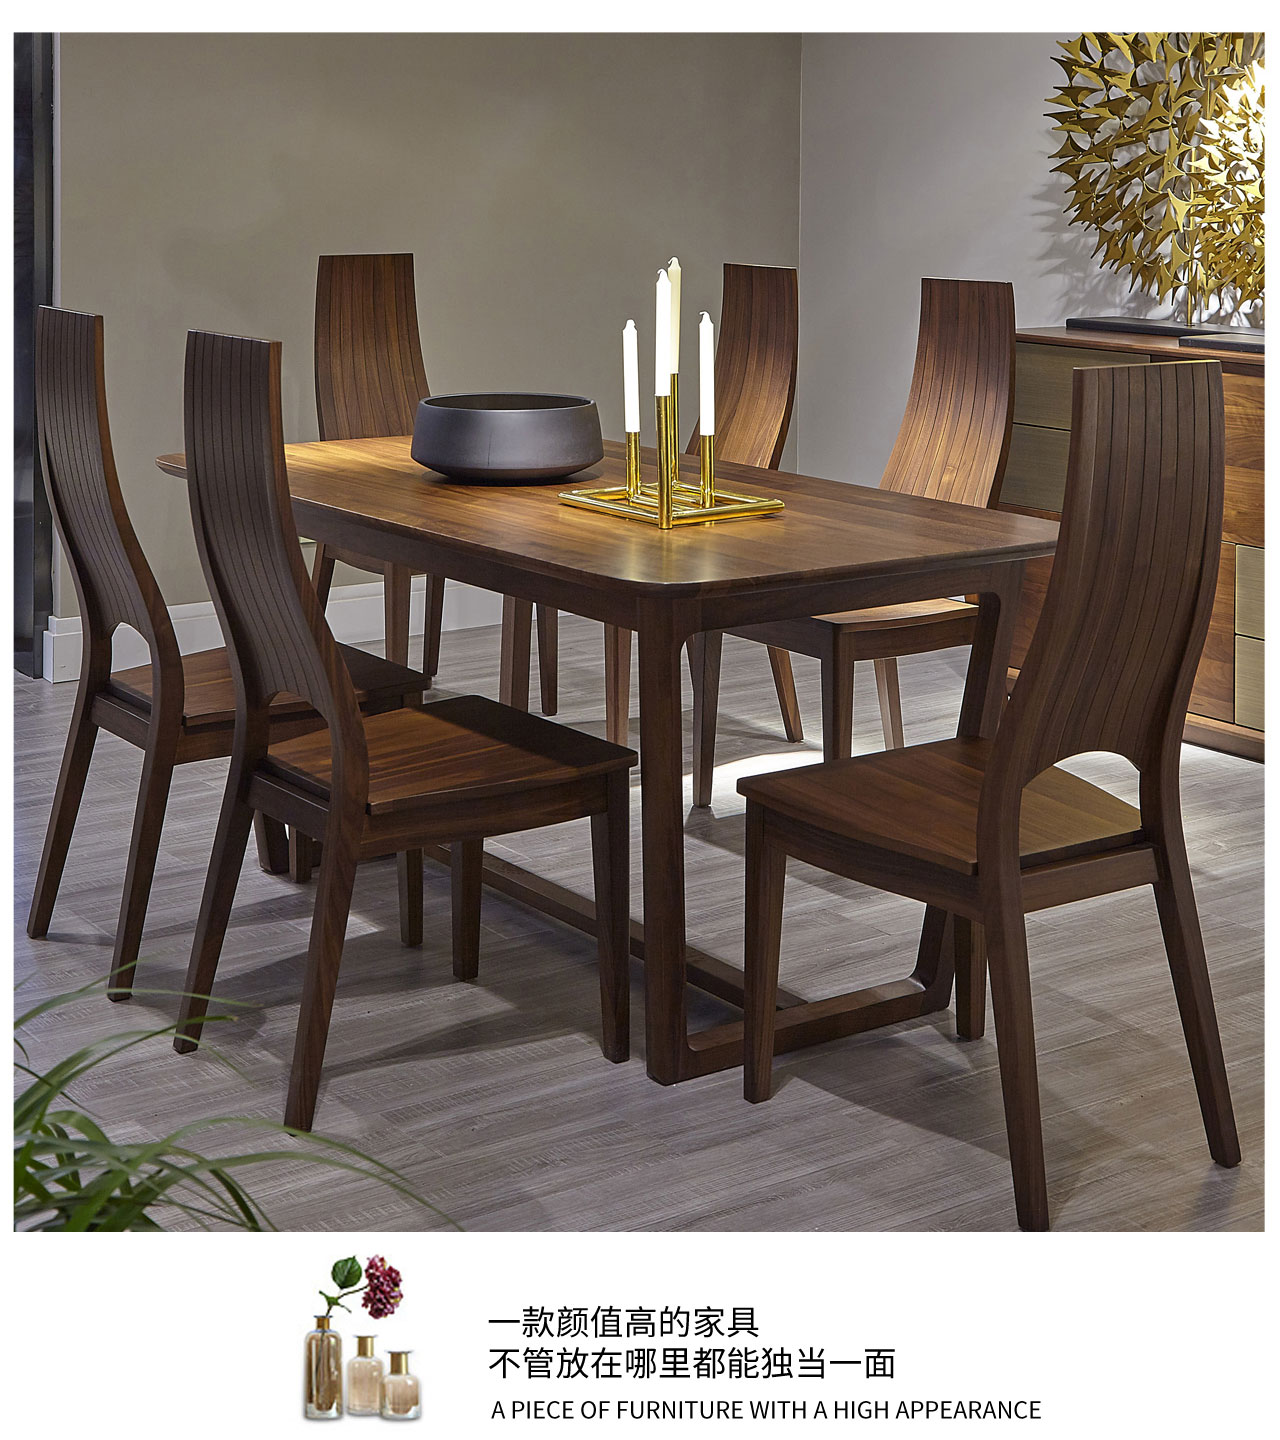 北美黑胡桃餐桌北欧简约纯实木餐厅饭桌日式长方形餐桌椅组合家具-淘宝网